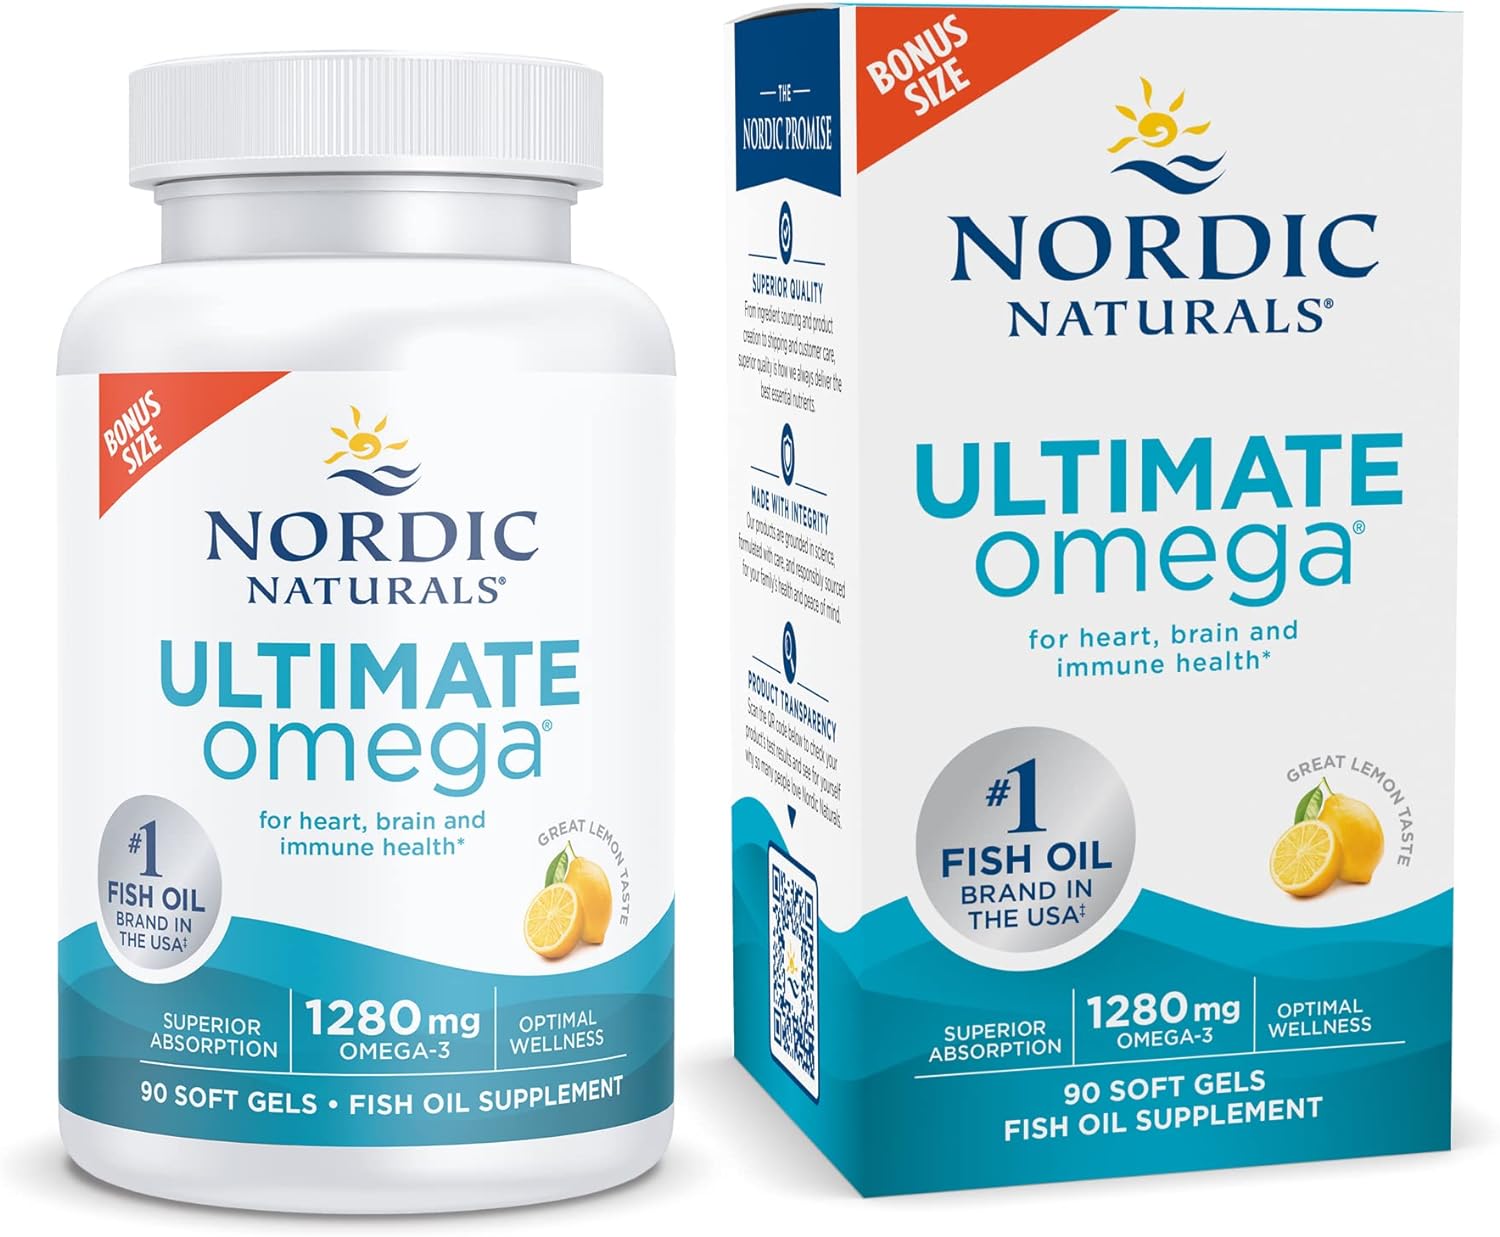 Nordic Naturals Ultimate Omega, Lemon Flavor - 90 Soft Gels - 1280 mg Omega-3 - High-Potency Omega-3